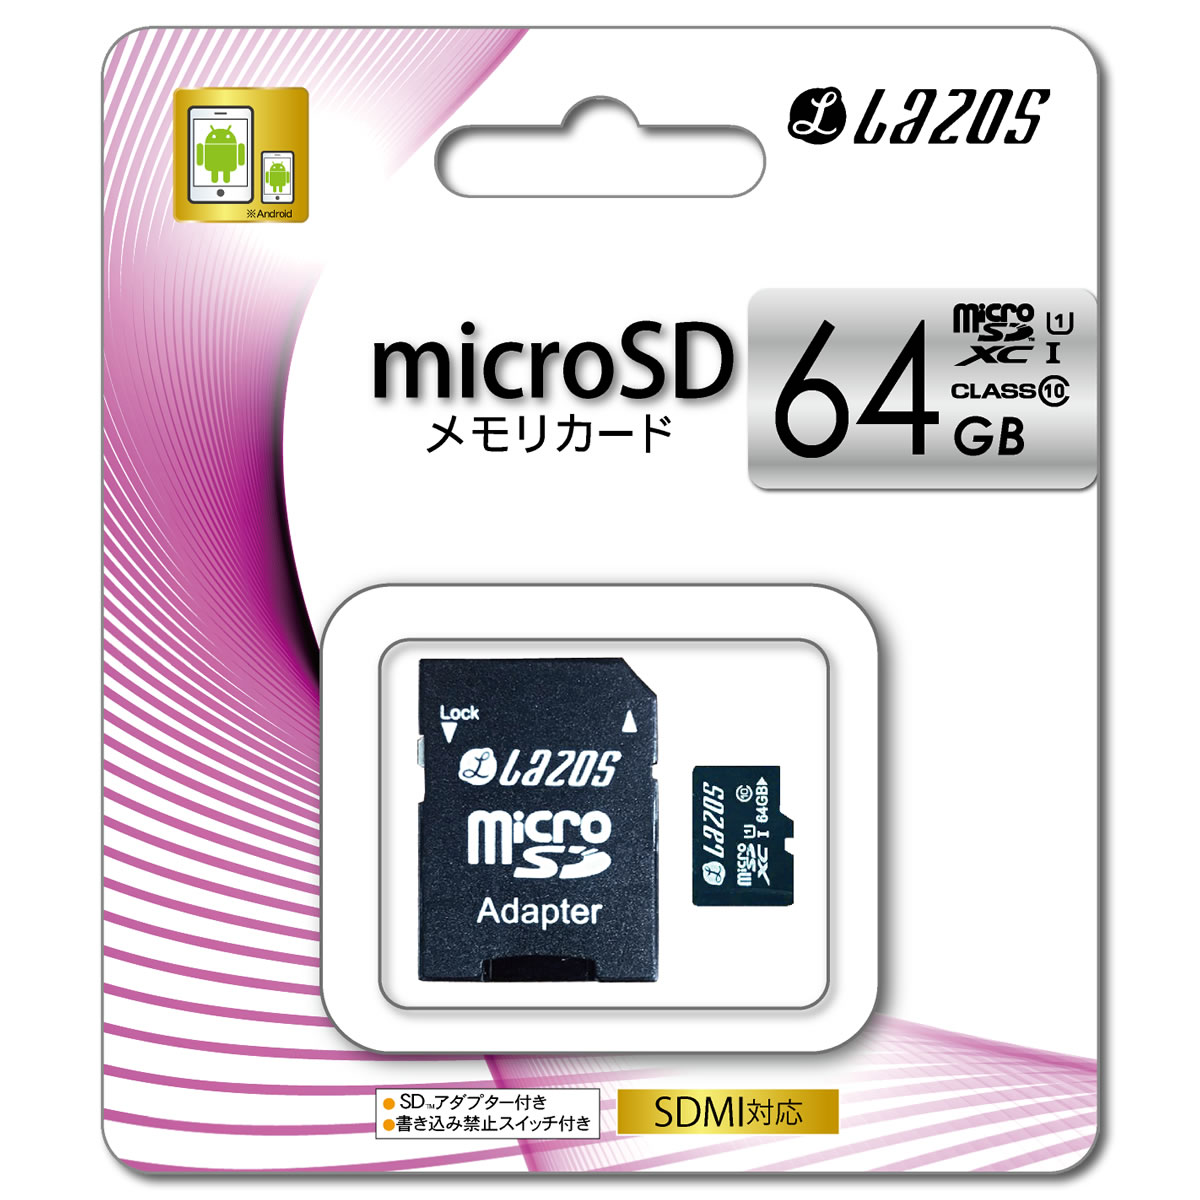 国内正規品 MicroSDメモリーカード メーカー保証 1年間 64GB マイクロ SDカード TFカード 倉 メモリーカード microSDHC 国内1年保証 CLASS10 変換アダプタ付き メール便送料無料 お見舞い